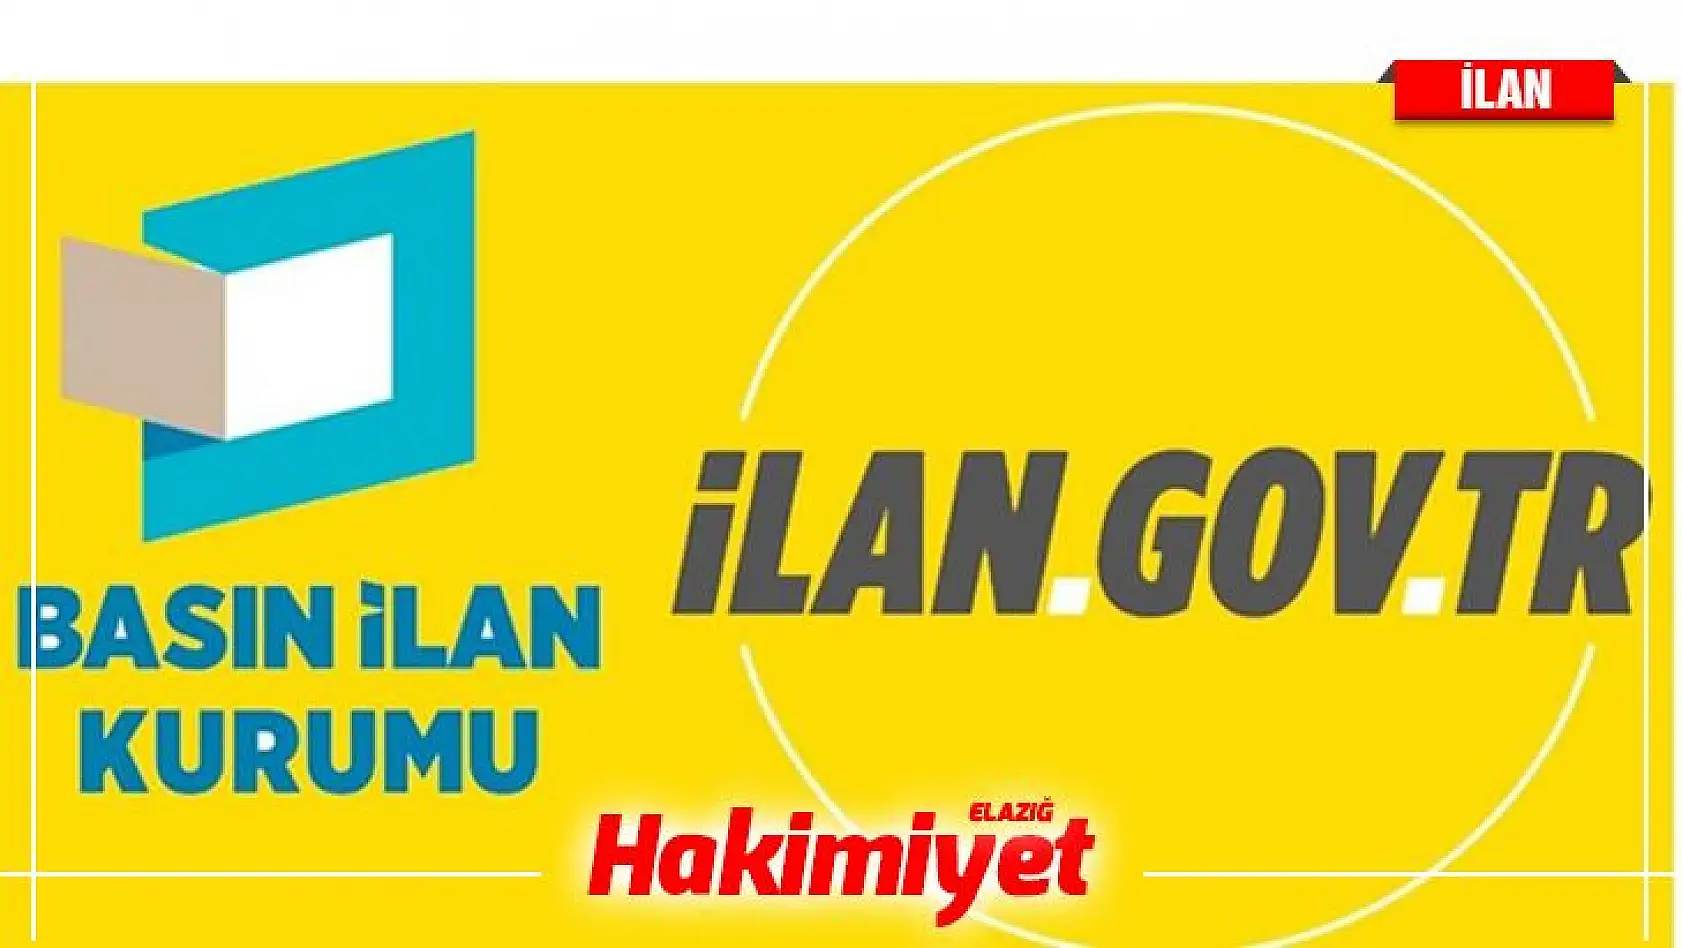 İstanbul Yeni Yüzyıl Üniversitesi 60 Öğretim Üyesi alıyor